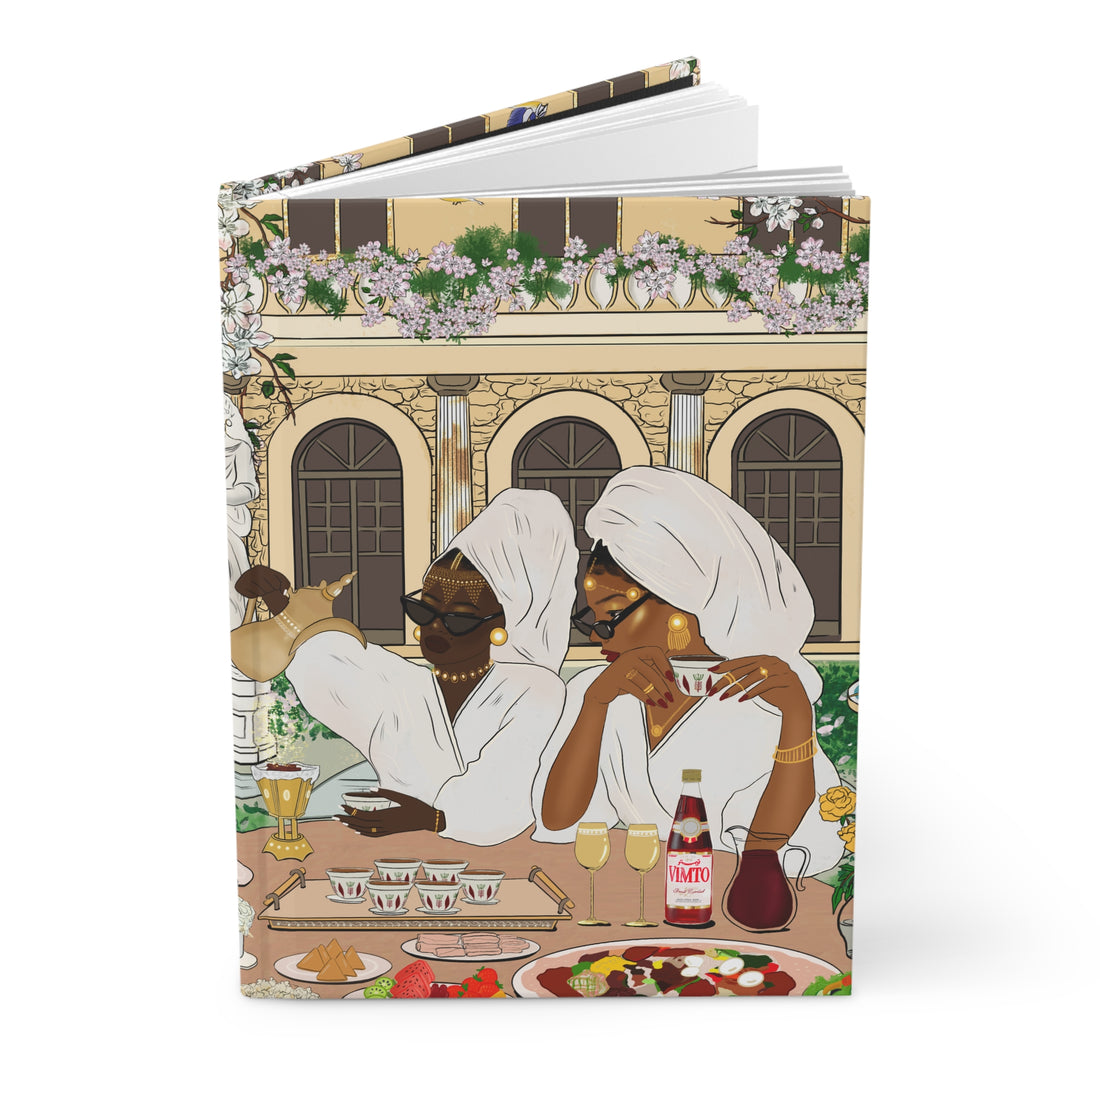 A Rich, Royal, Regal Dinner - Hardcover Journal Matte